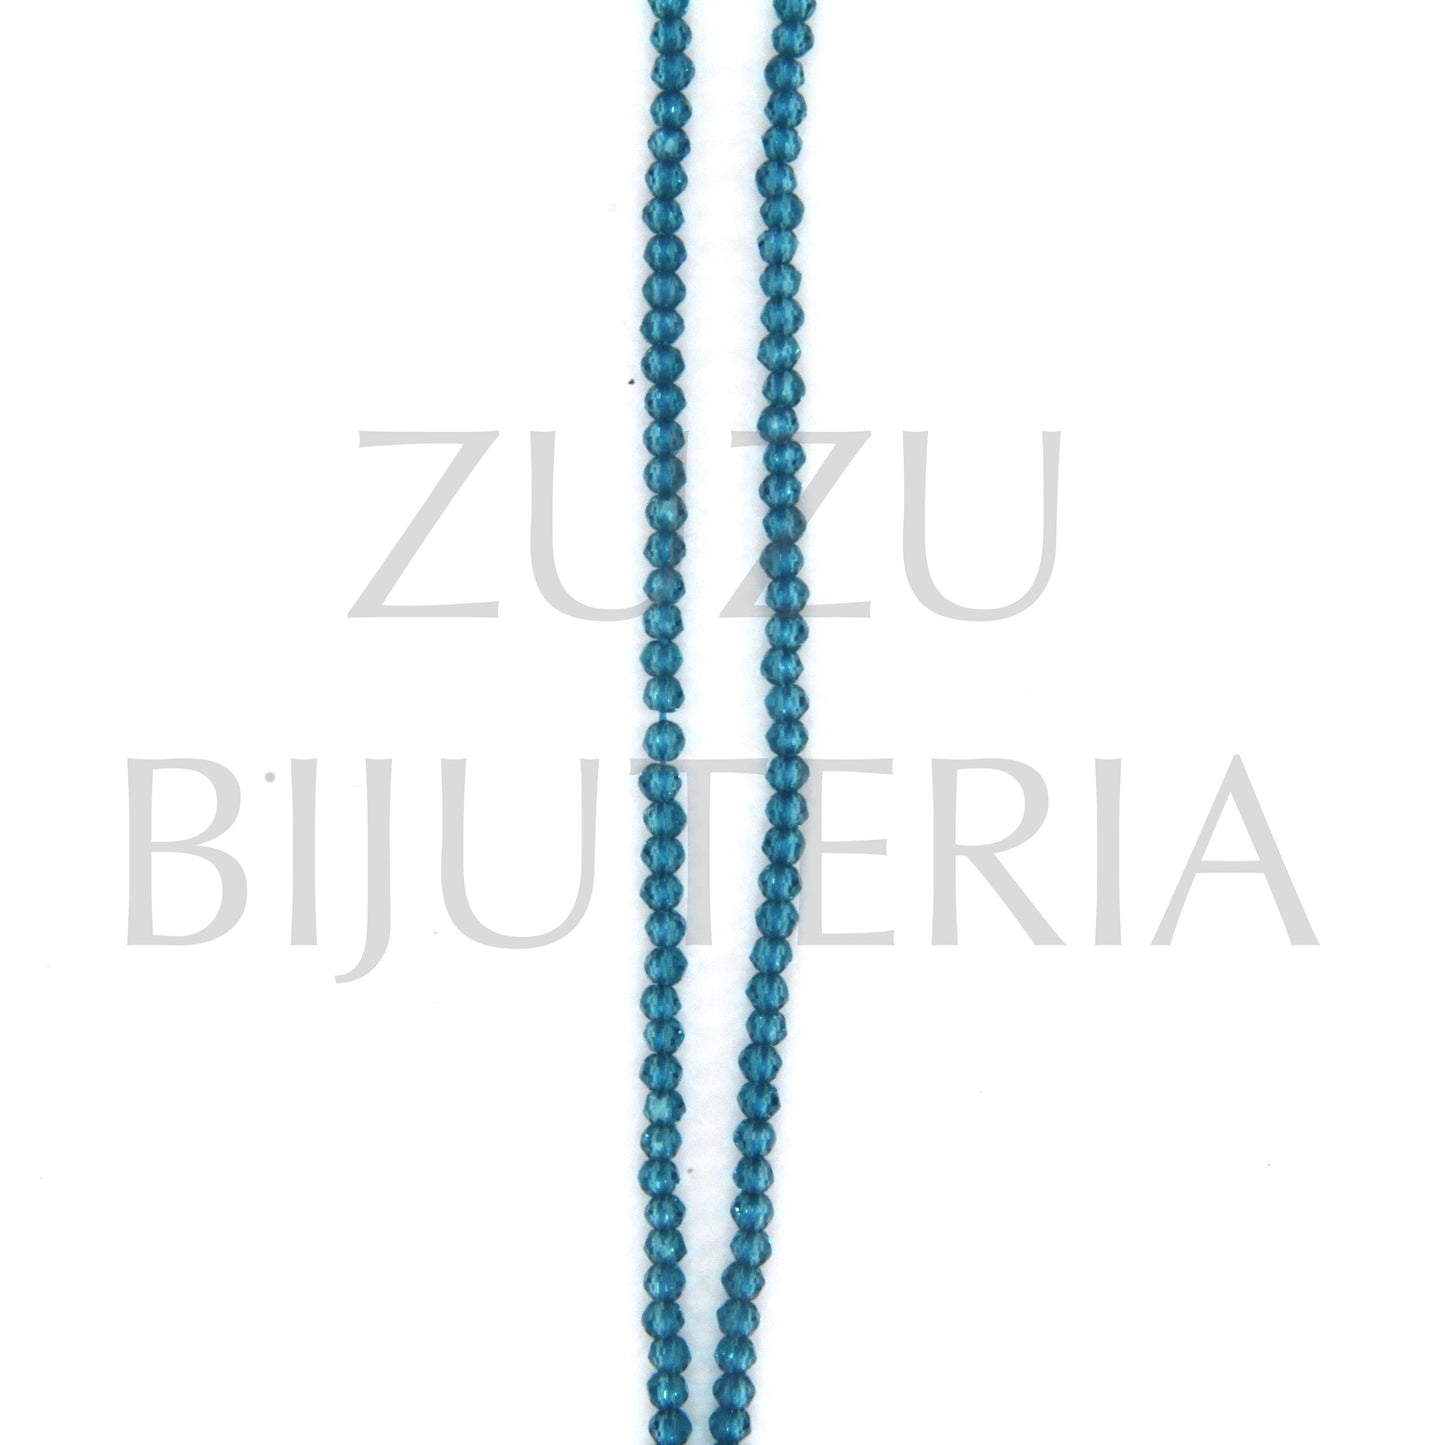 Fiada Cristais Azul 2mm (Comprimento 35cm)